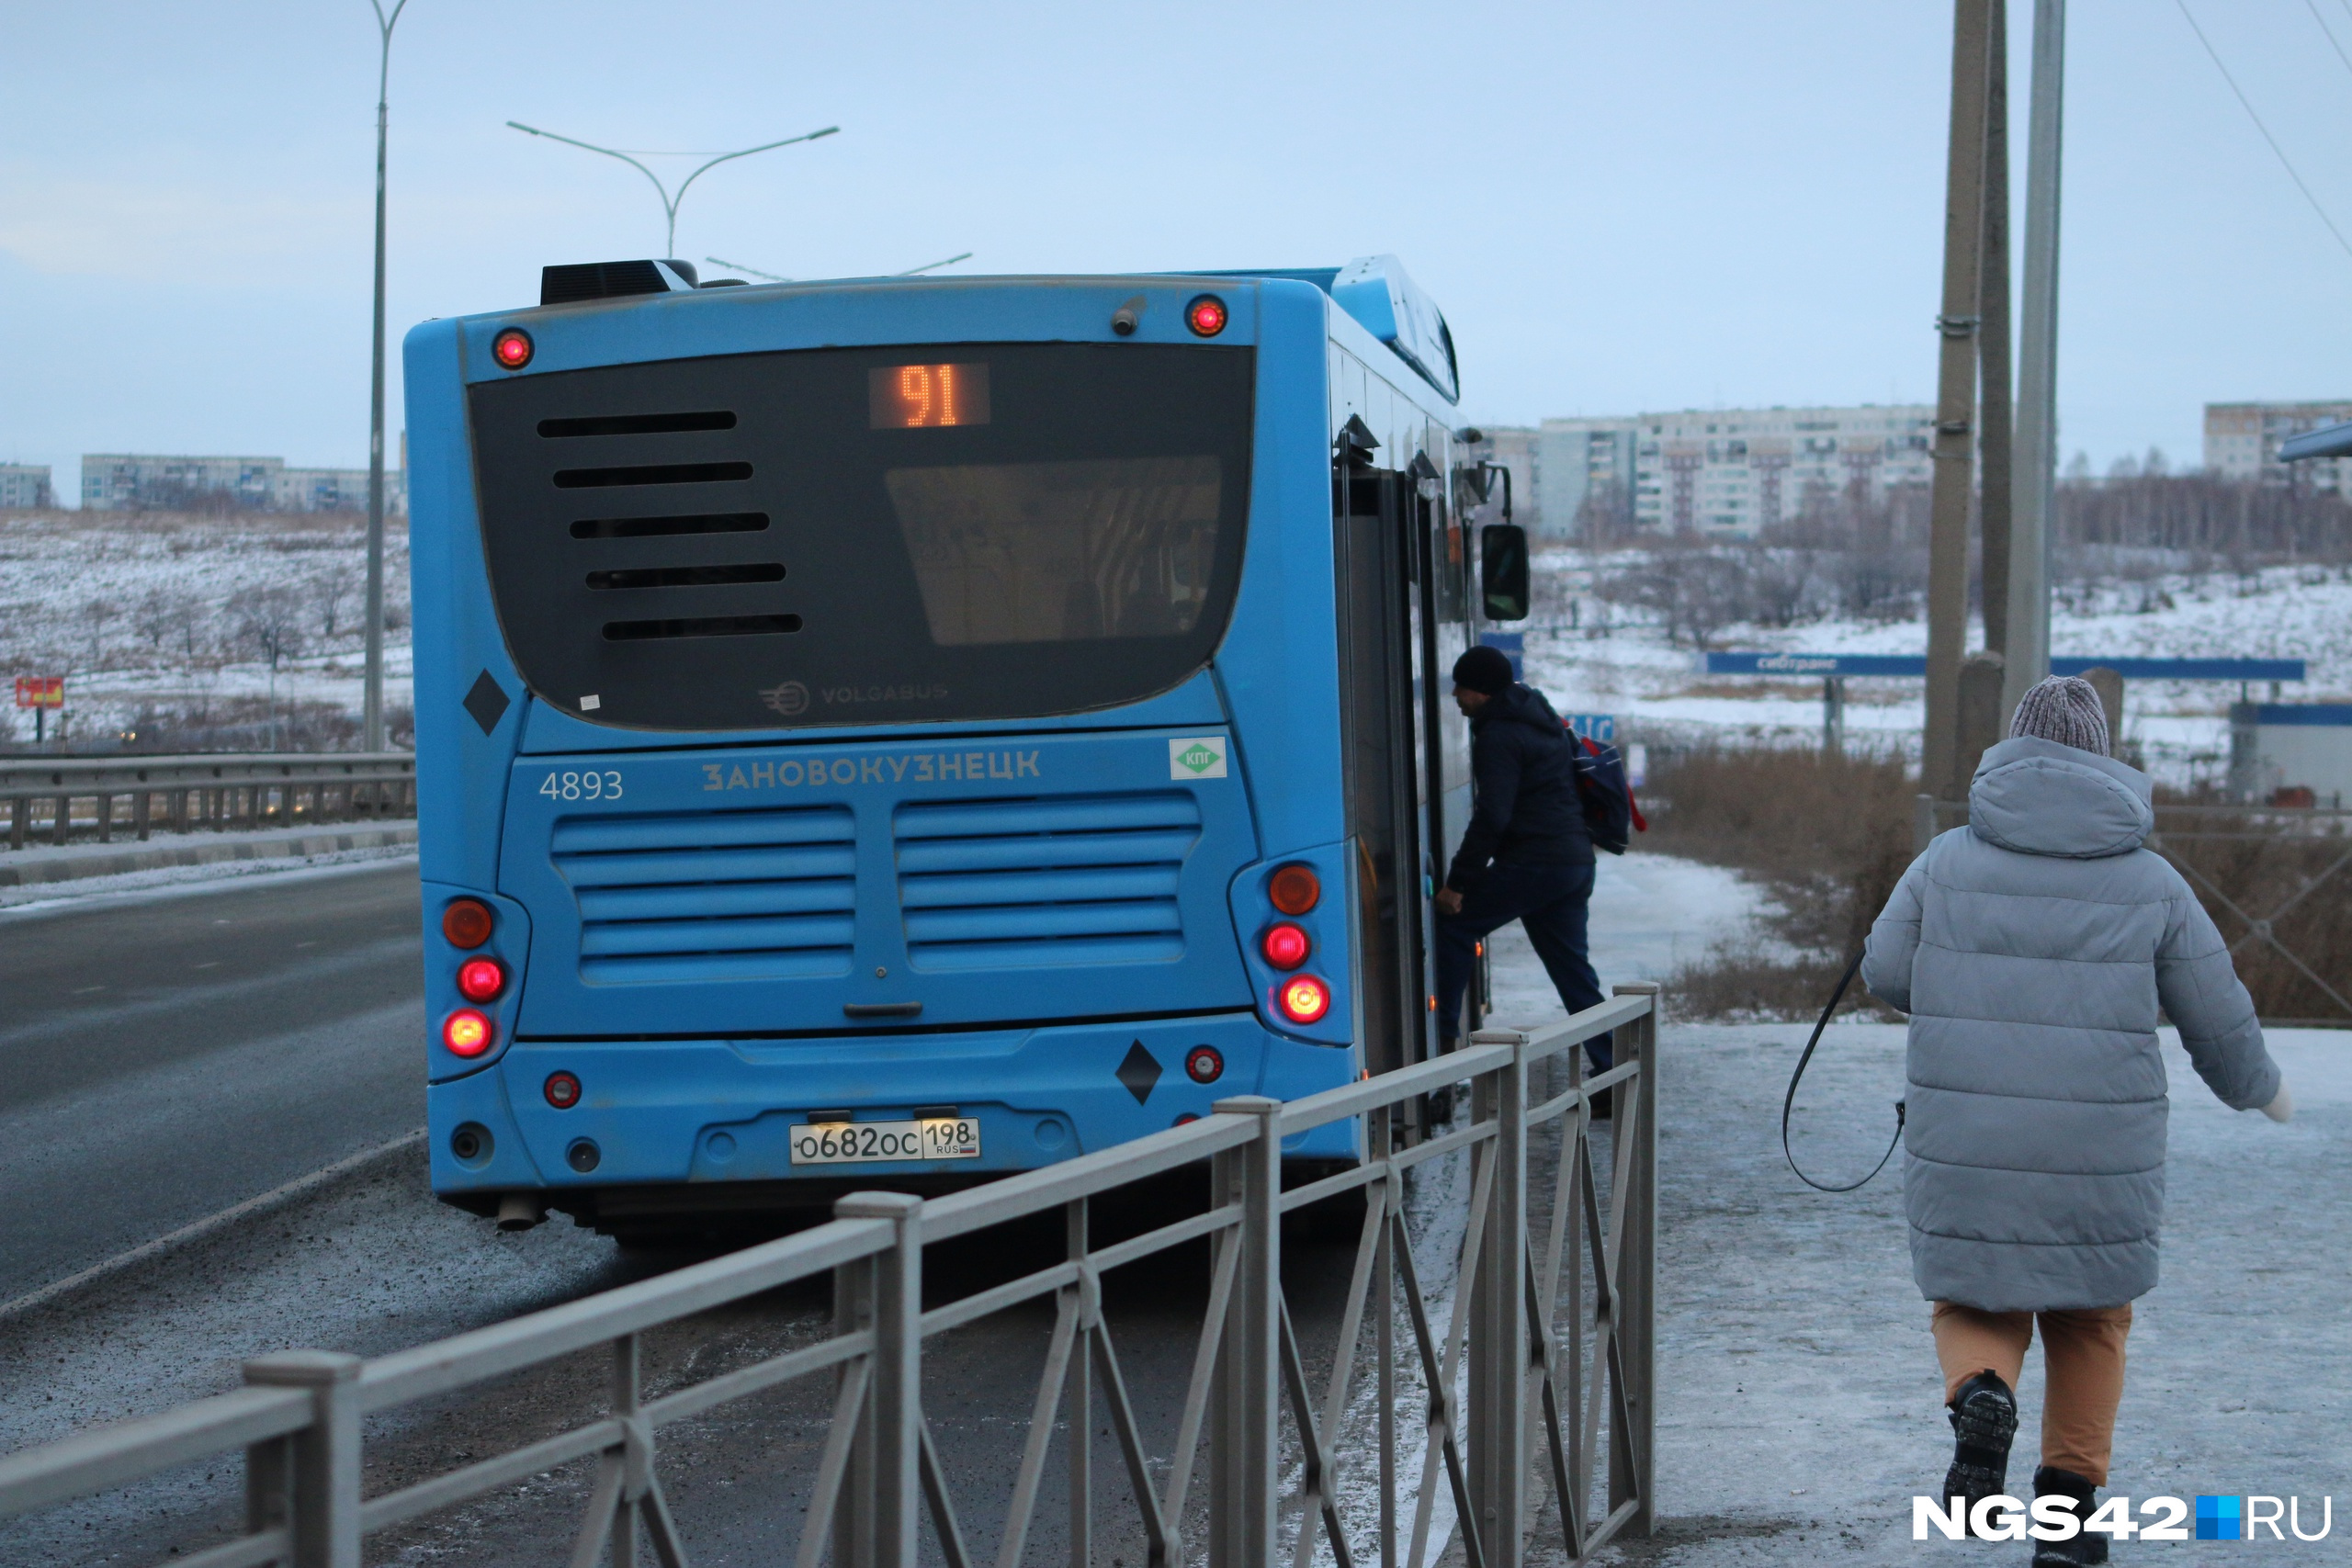 Нехватка водителей и ломающиеся автобусы: в мэрии Новокузнецка и «ПитерАвто» озвучили причины проблем с перевозками